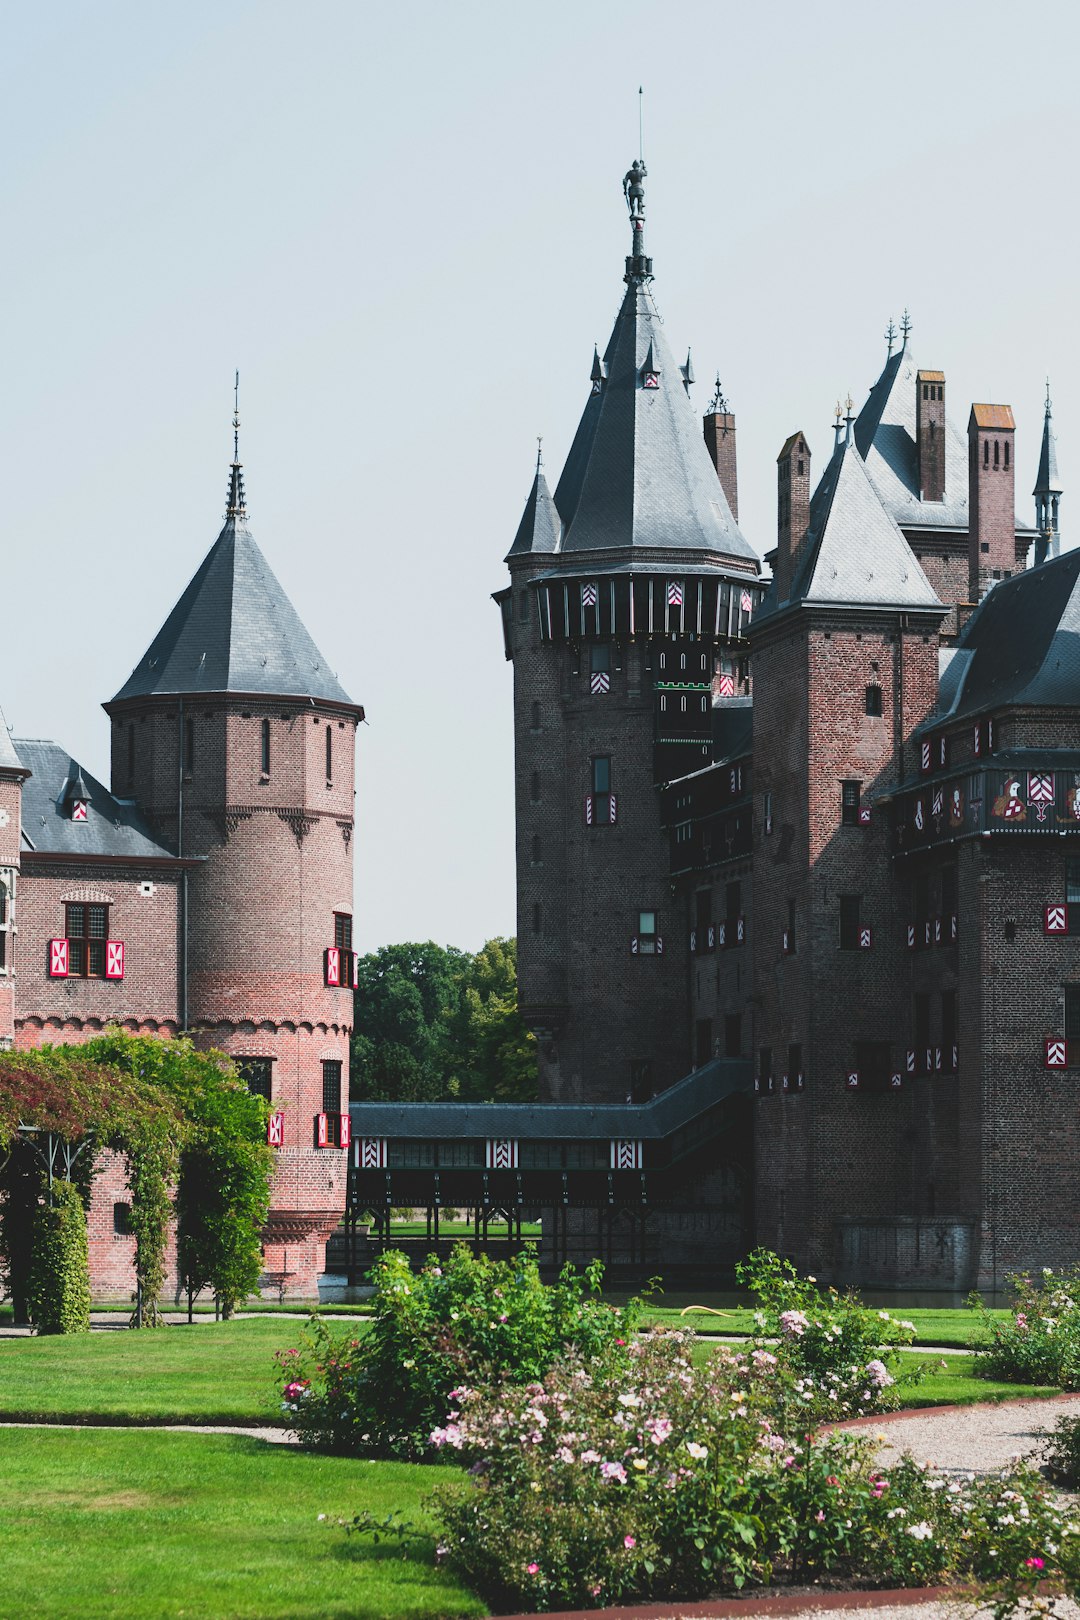 Château photo spot Castle De Haar Eindhoven